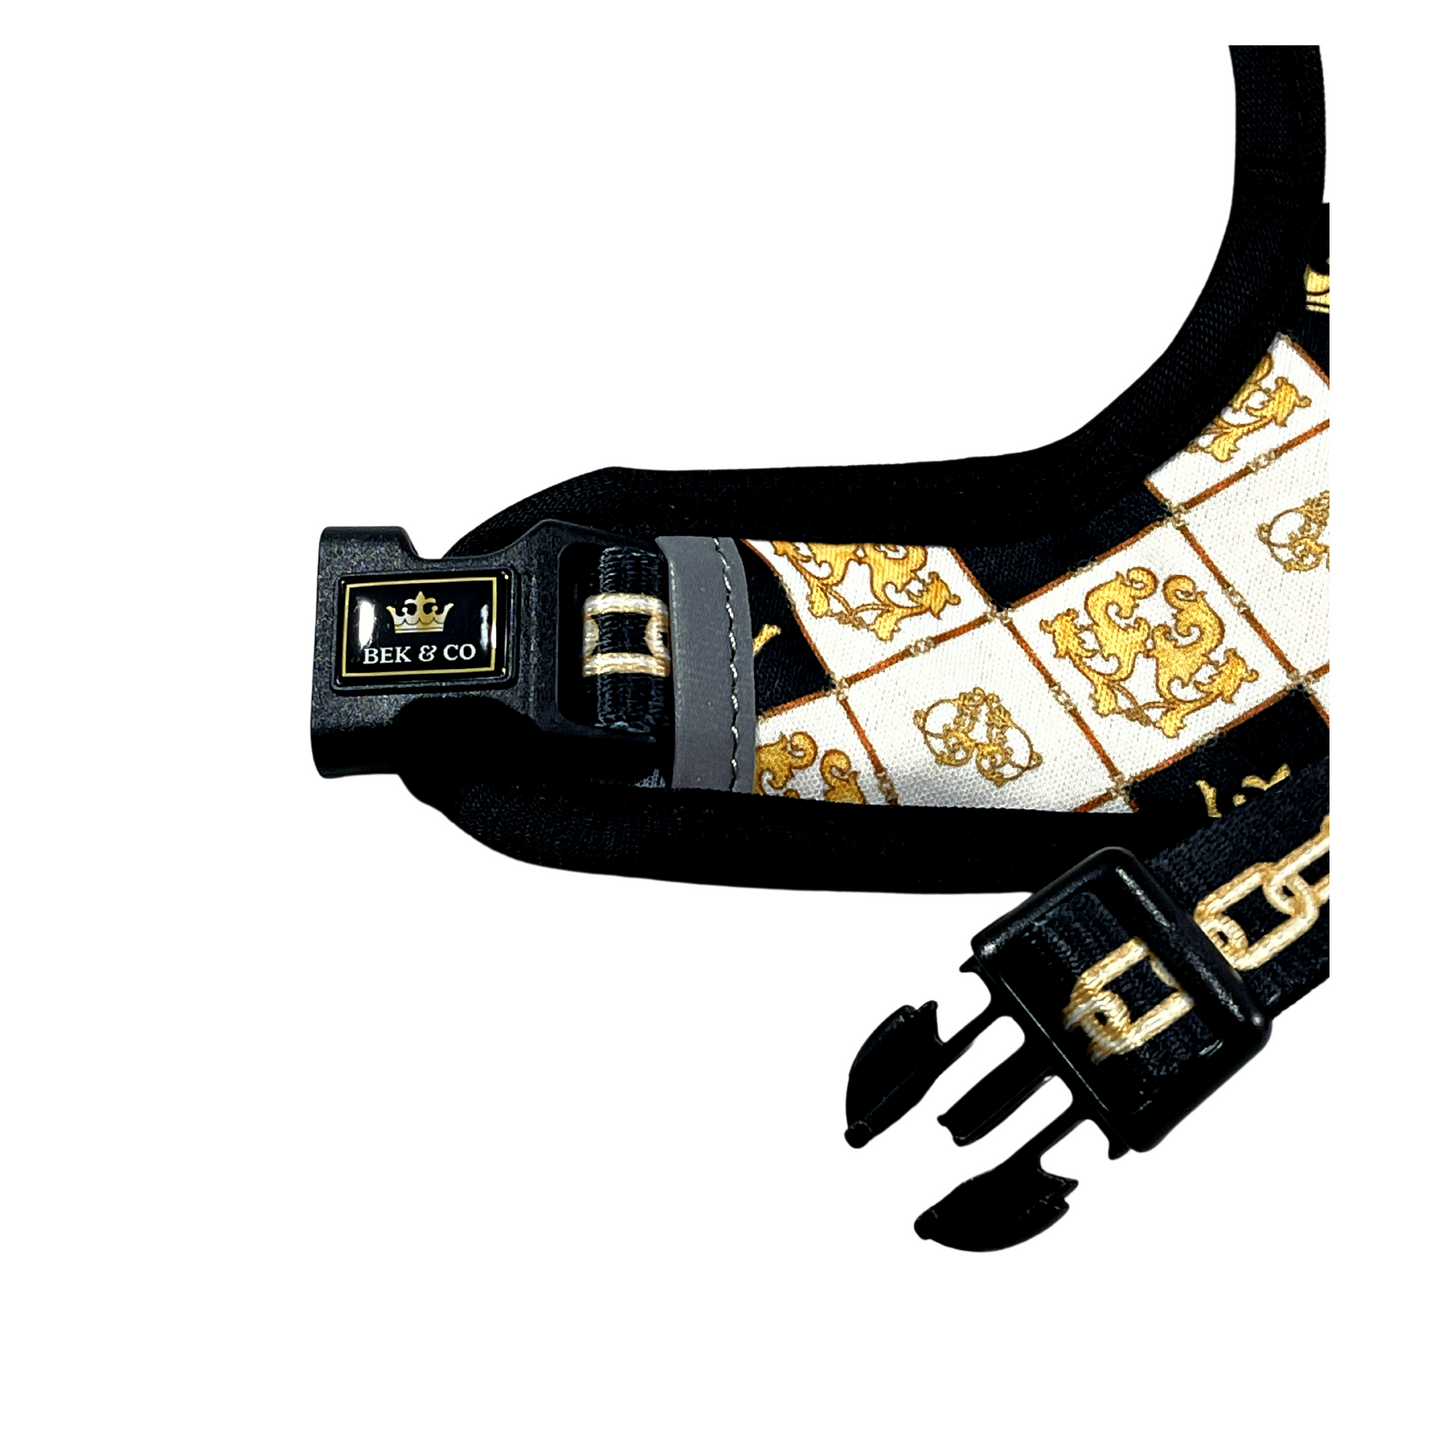 Royal Adjustable French Bulldog Harness clip close up